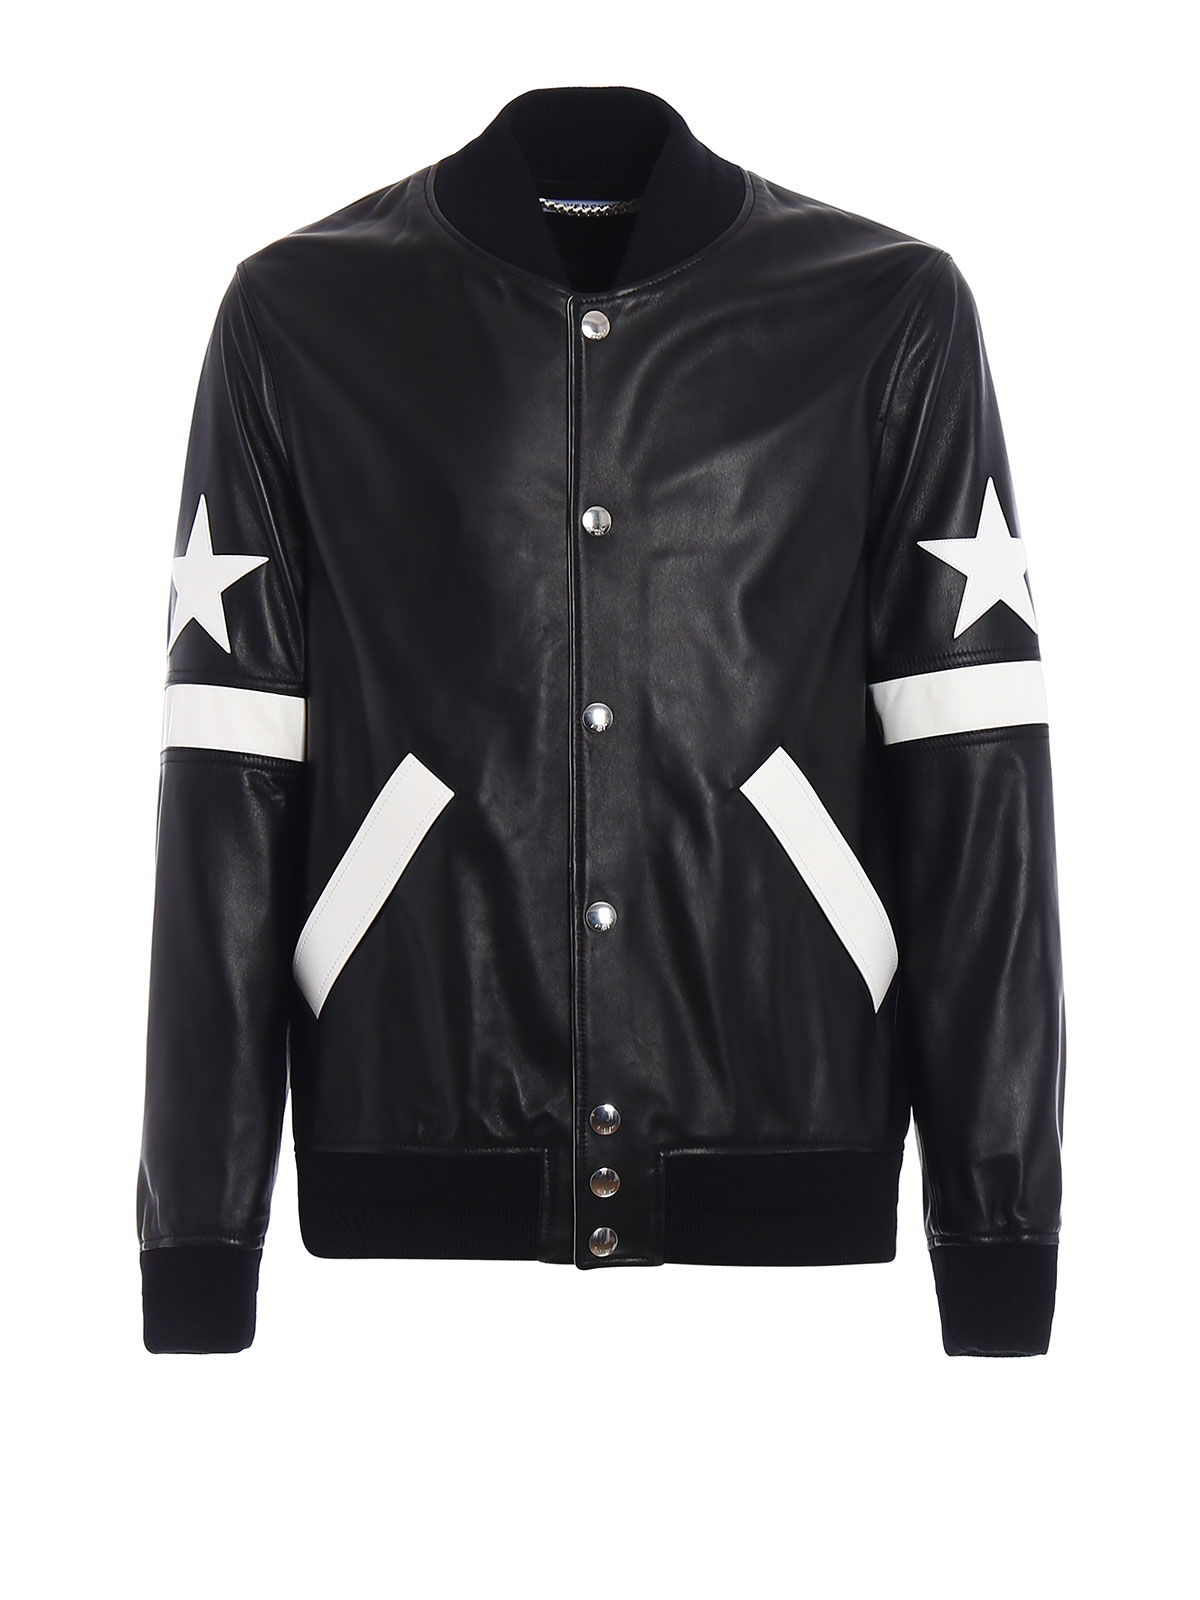 Two-Tone Leather Varsity Jacket